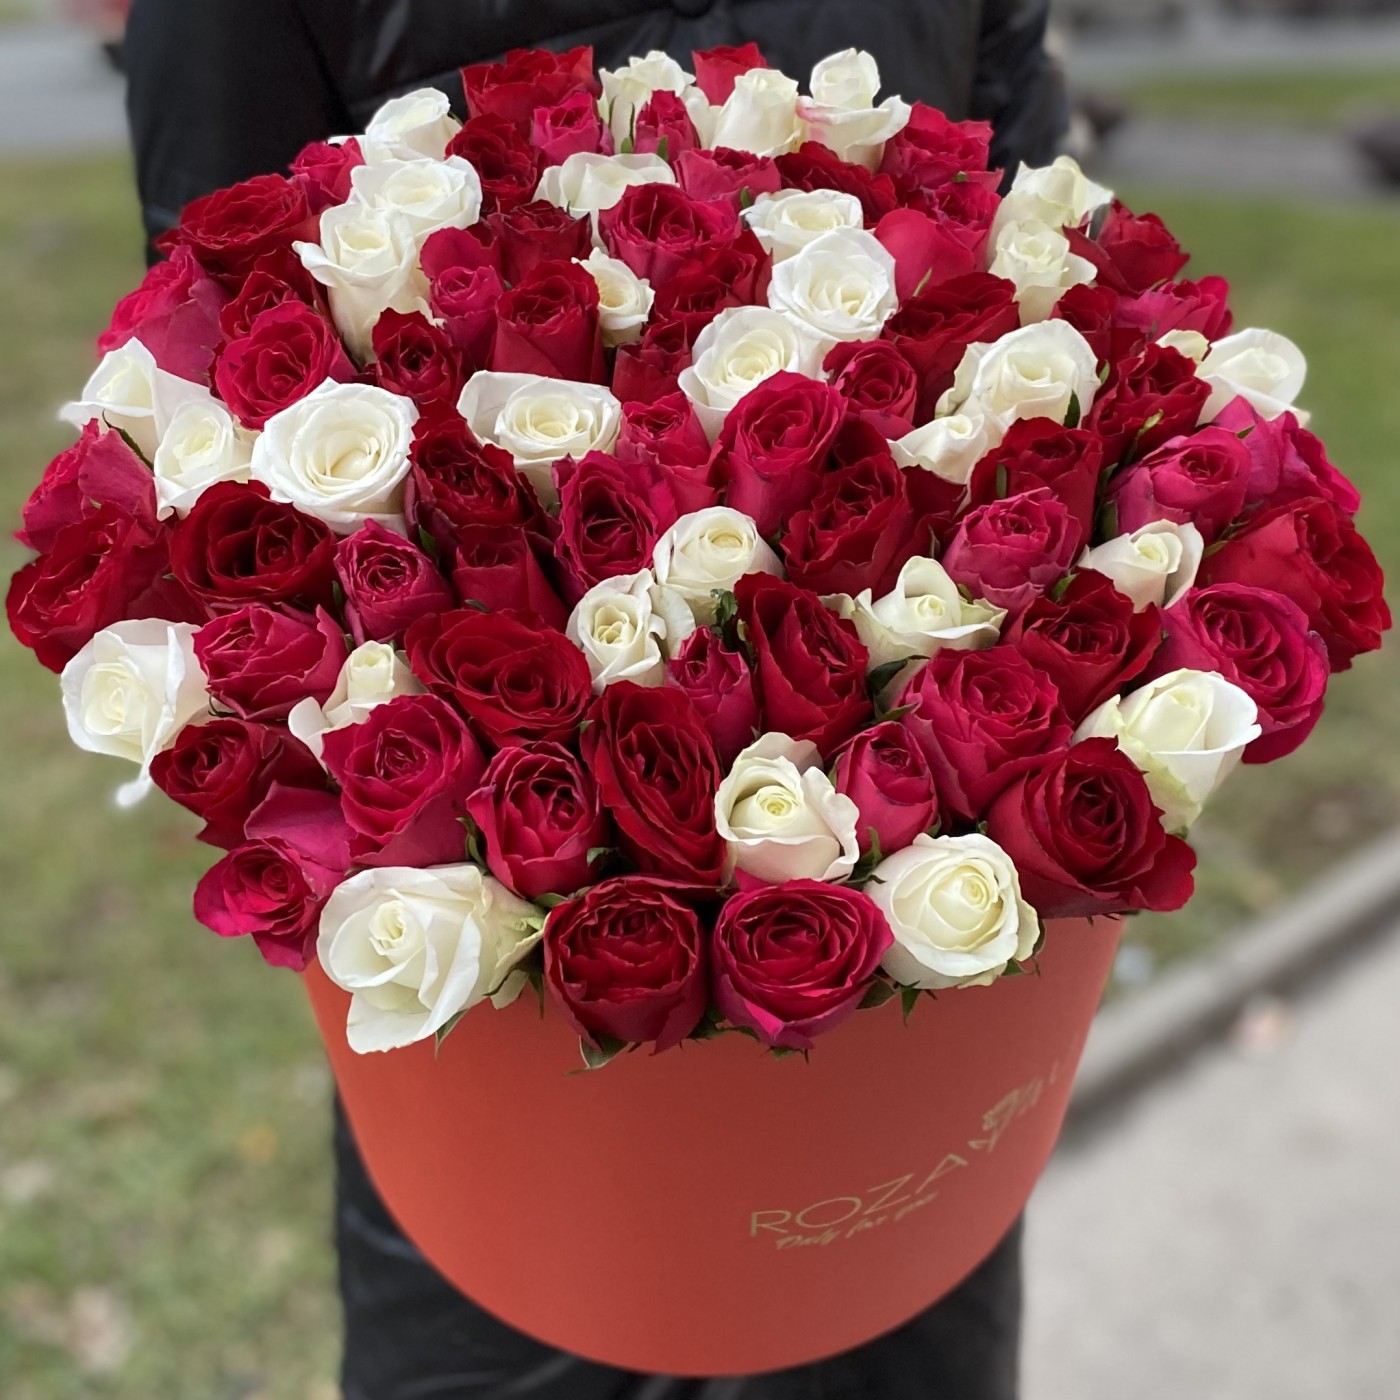 Большая красная коробка с розами